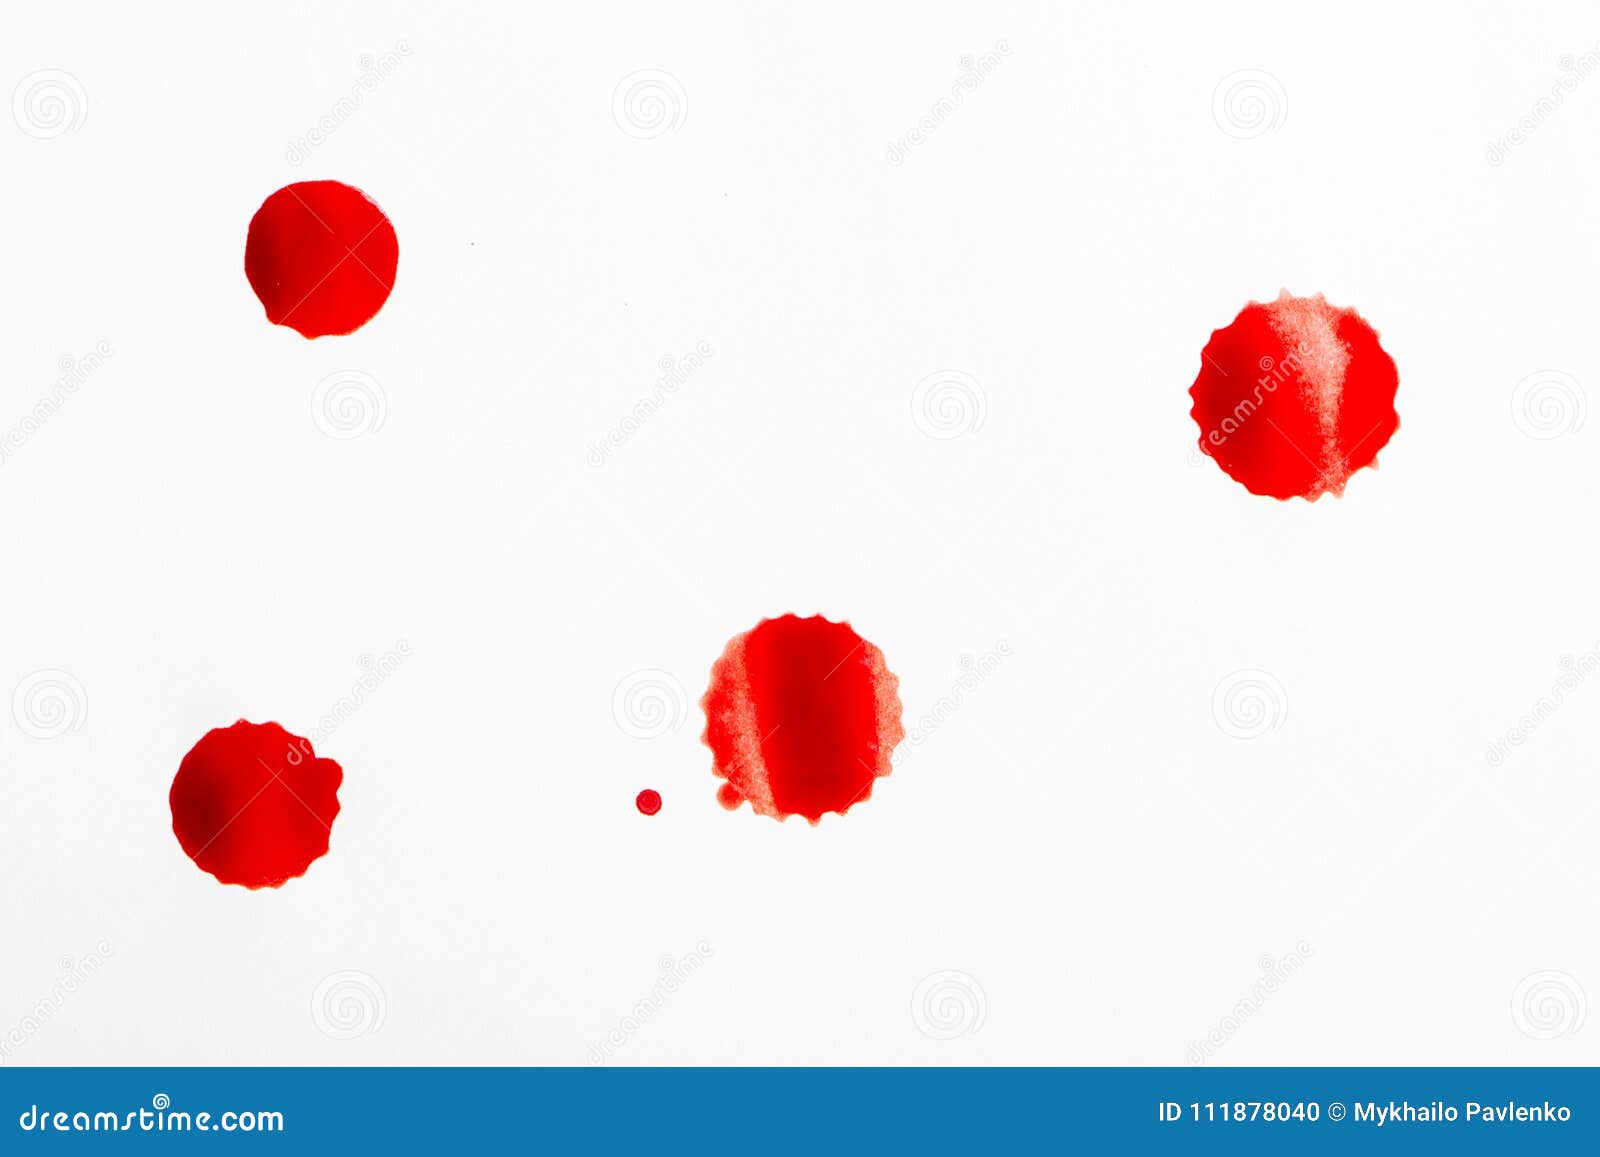 Алая кровь на туалетной бумаге. Красная кровь на туалетной бумаге.